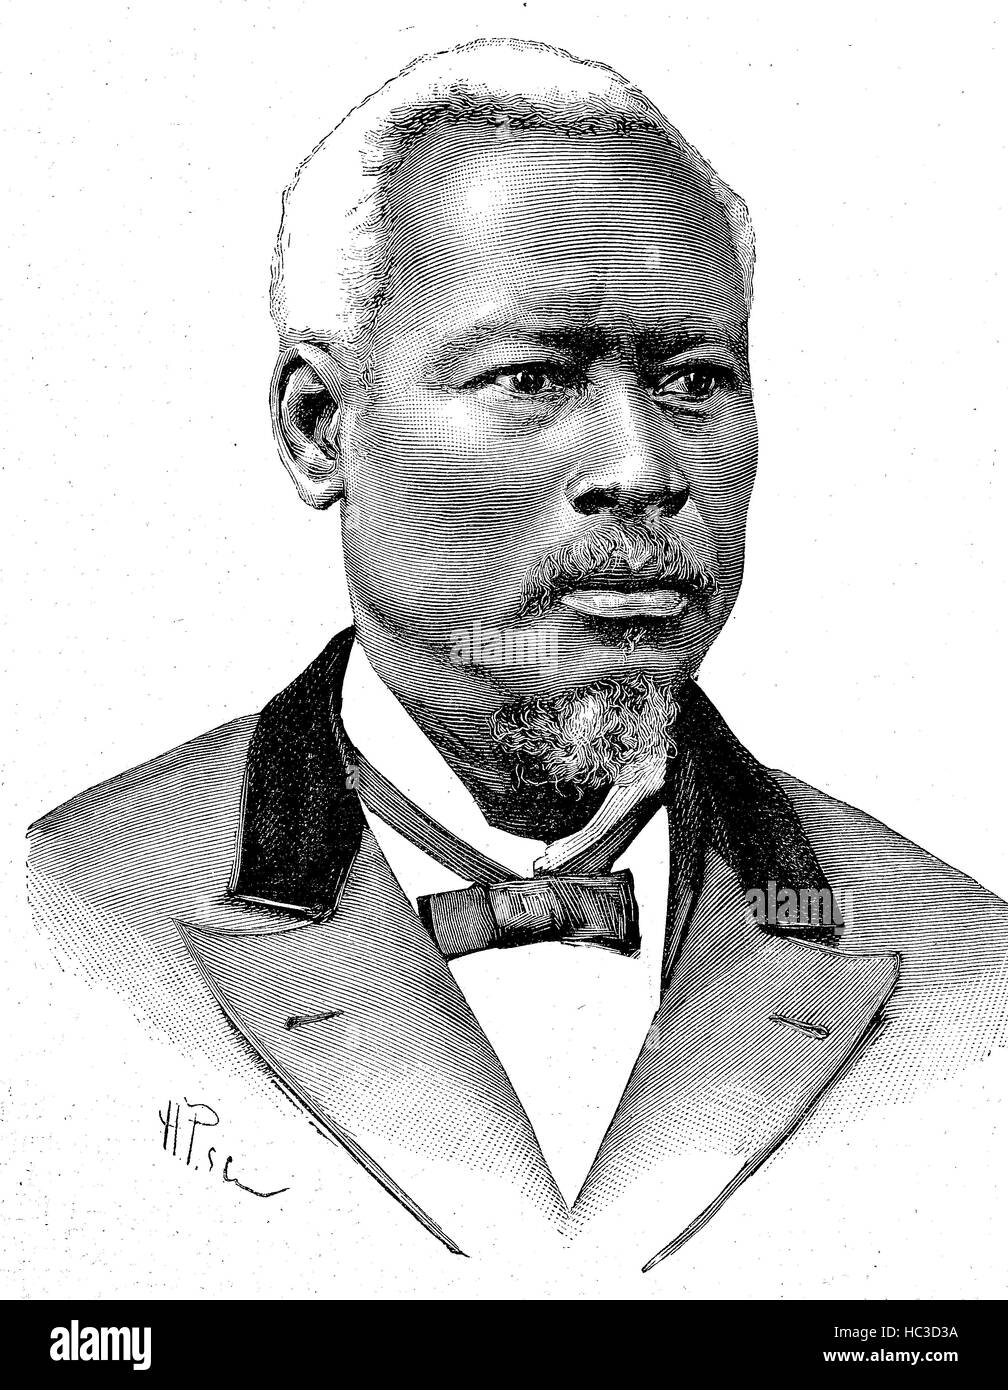 Louis Mondestin Florvil Hyppolite, 1828 - 1896, le président d'Haïti du 17 octobre 1889 au 24 mars 1896, l'illustration historique, gravure sur bois, 1890 Banque D'Images